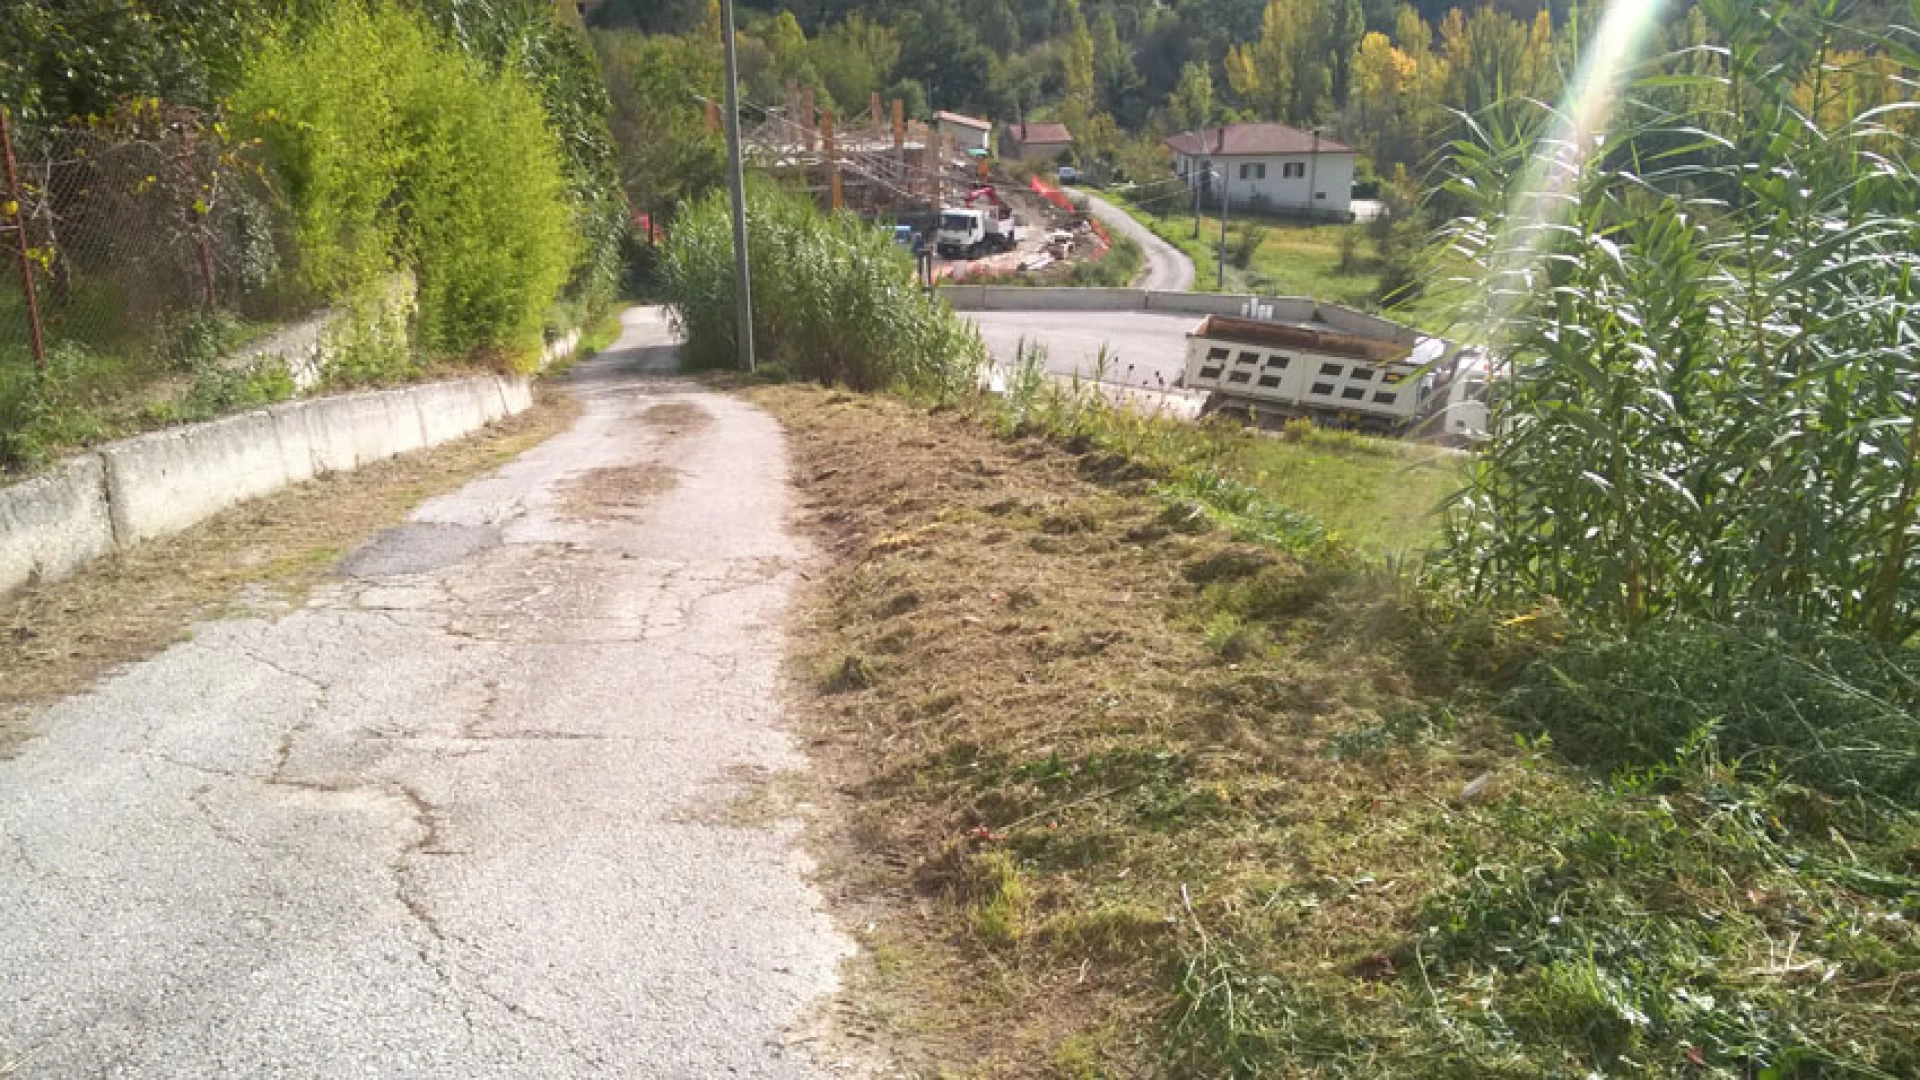 Colli a Volturno: pulizia del territorio e manutenzione stradale. L’Amministrazione Incollingo sul pezzo.